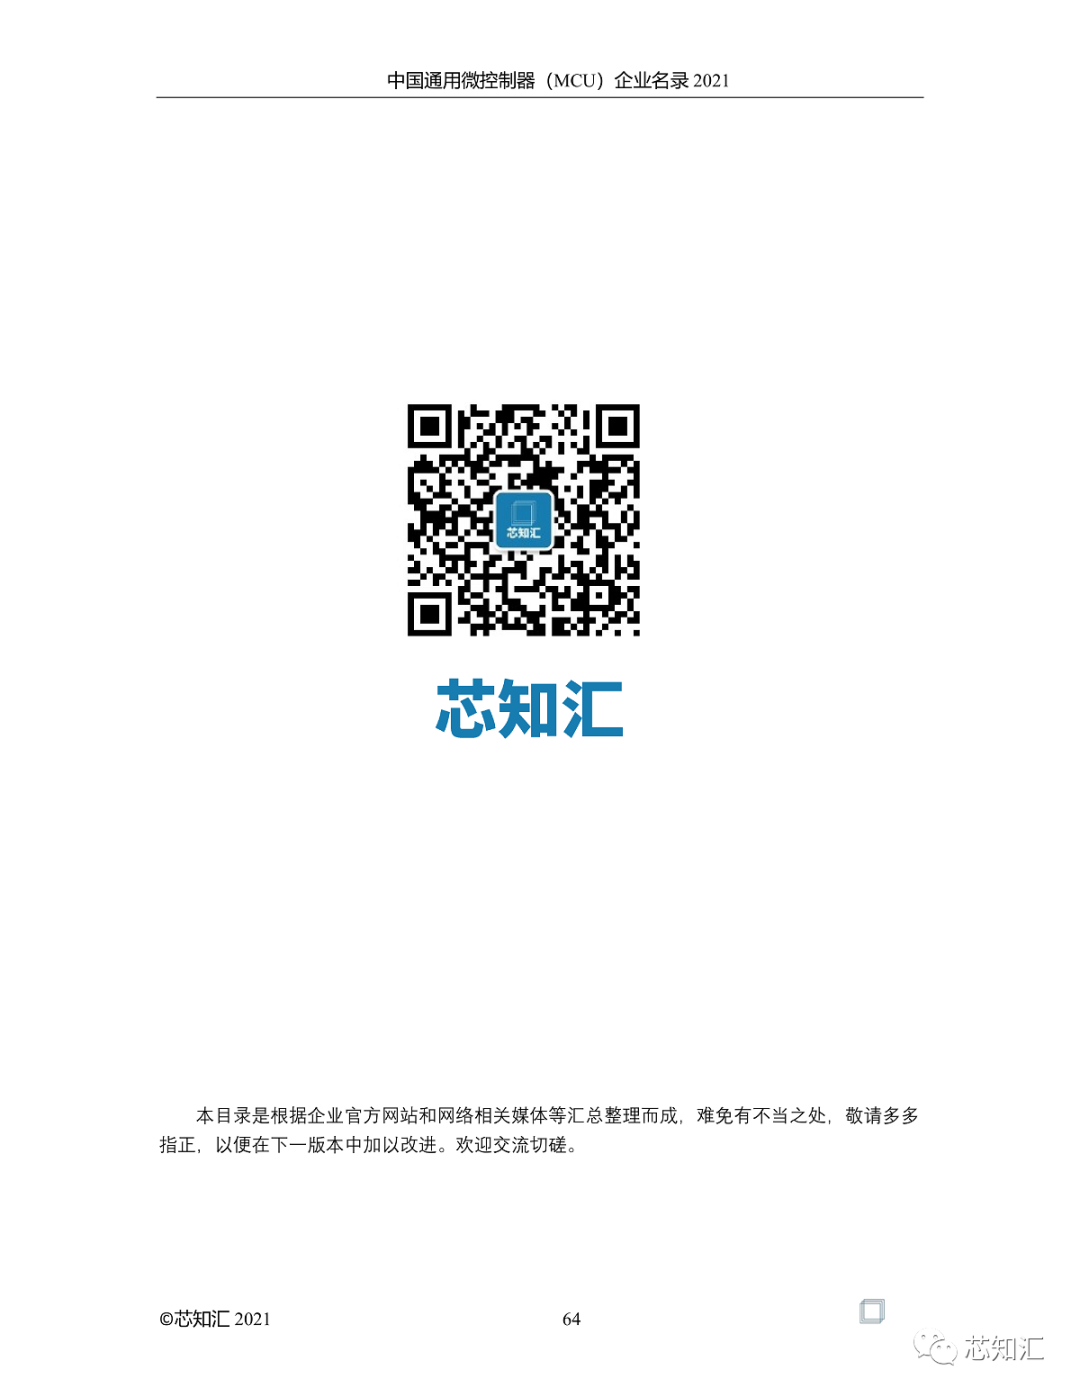 中国通用微控制器(MCU)企业名录-2021  第64张